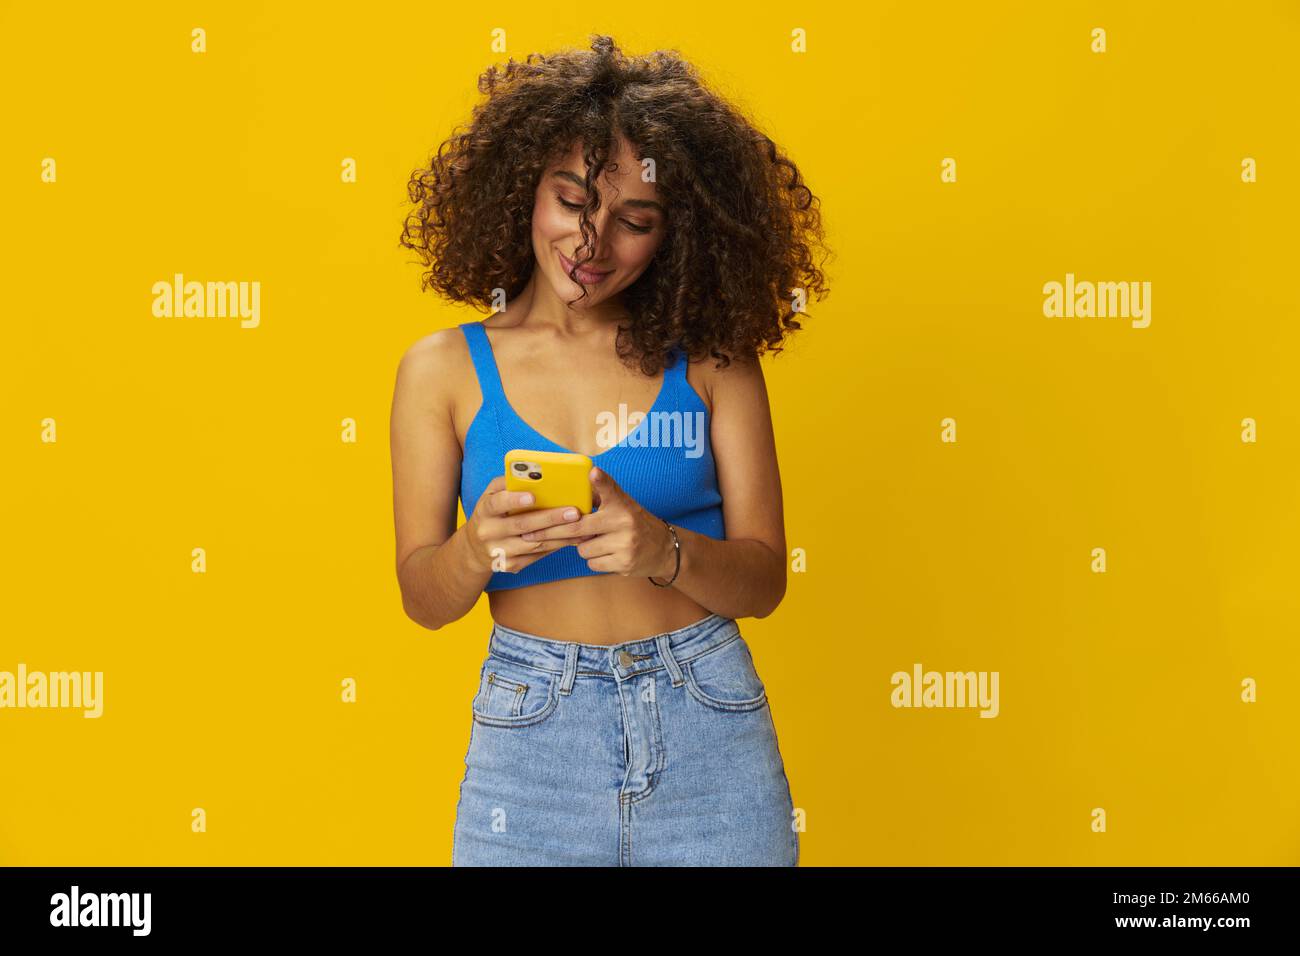 Influenceur femme avec le téléphone en main prenant des selfies parlant sur appel vidéo freelance travail de la technologie des médias sociaux, avec des cheveux frino maurly en chemise bleue Banque D'Images